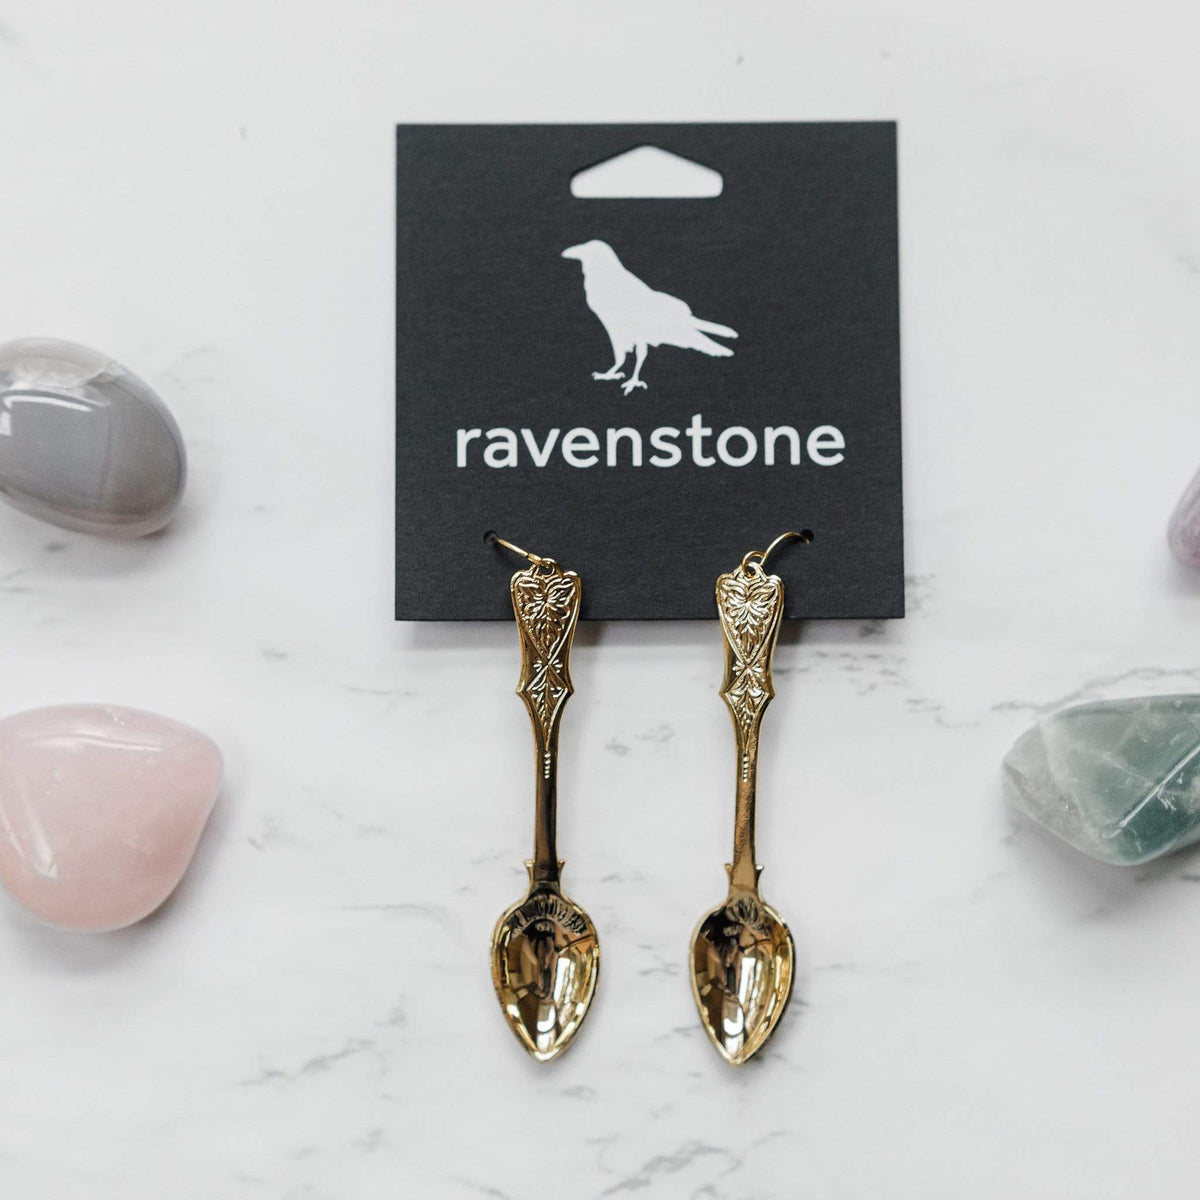 ravenstone The Golden Spoon Earrings